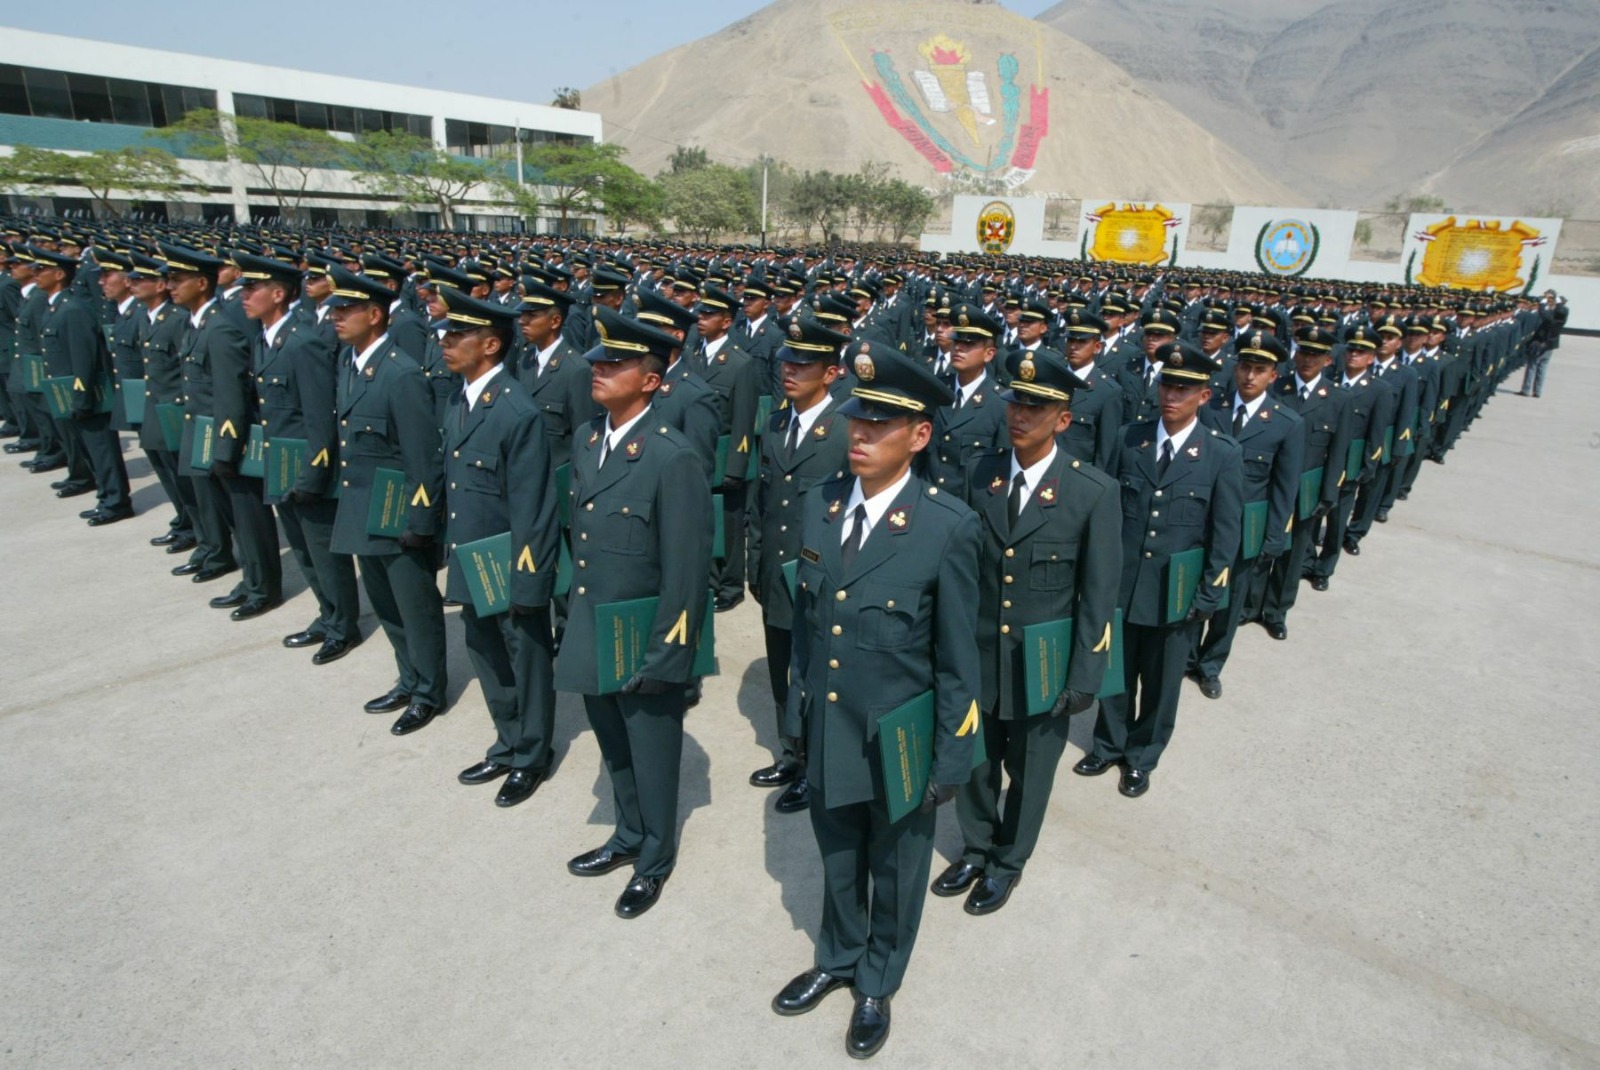 Abrirán 16 escuelas policiales en el Perú